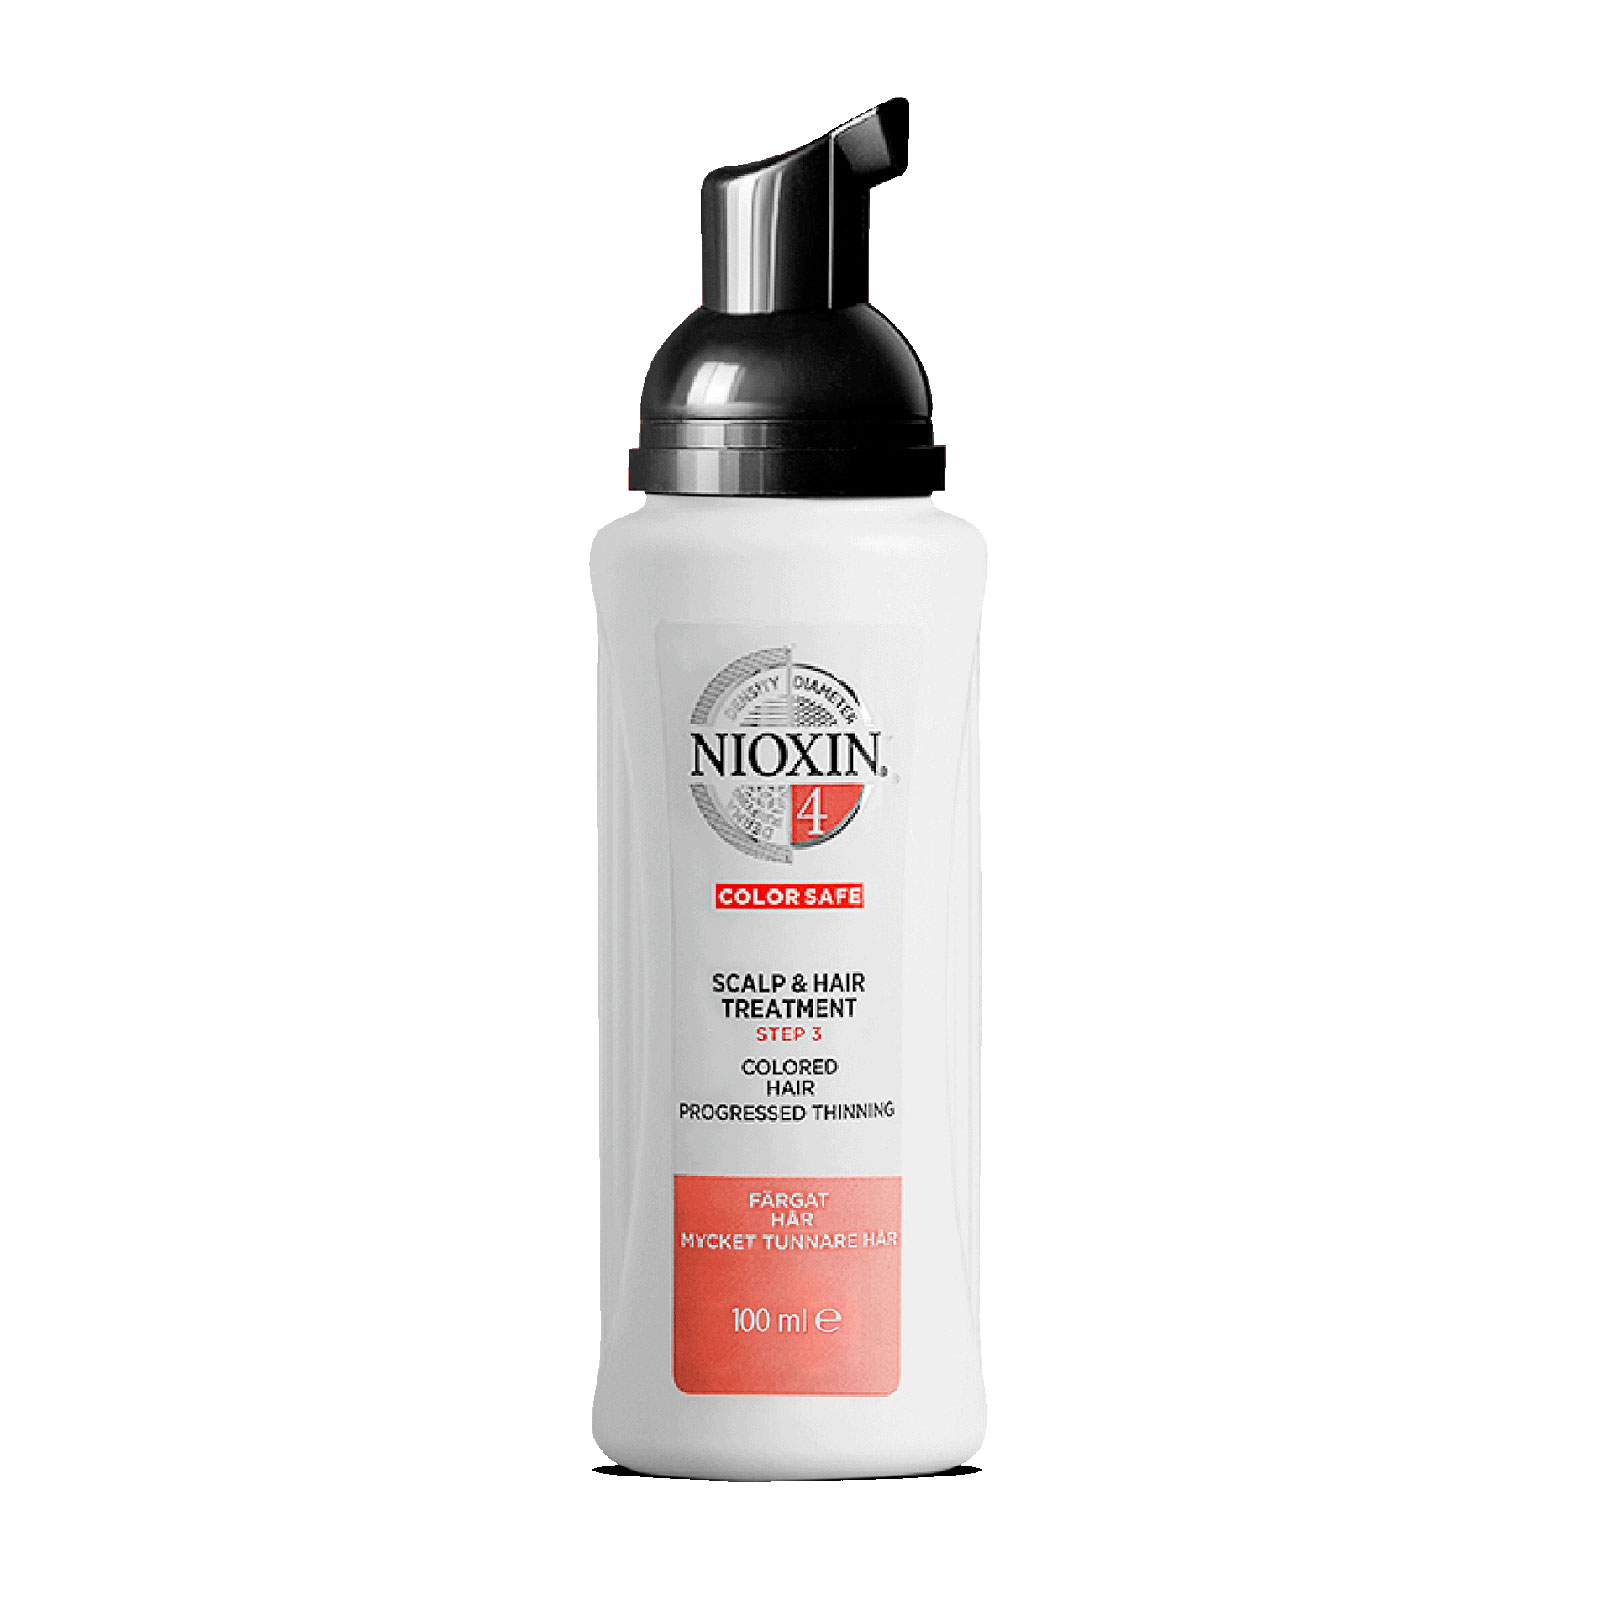 Nioxin 3-Part System 4 Scalp & Hair Treatment 100Ml